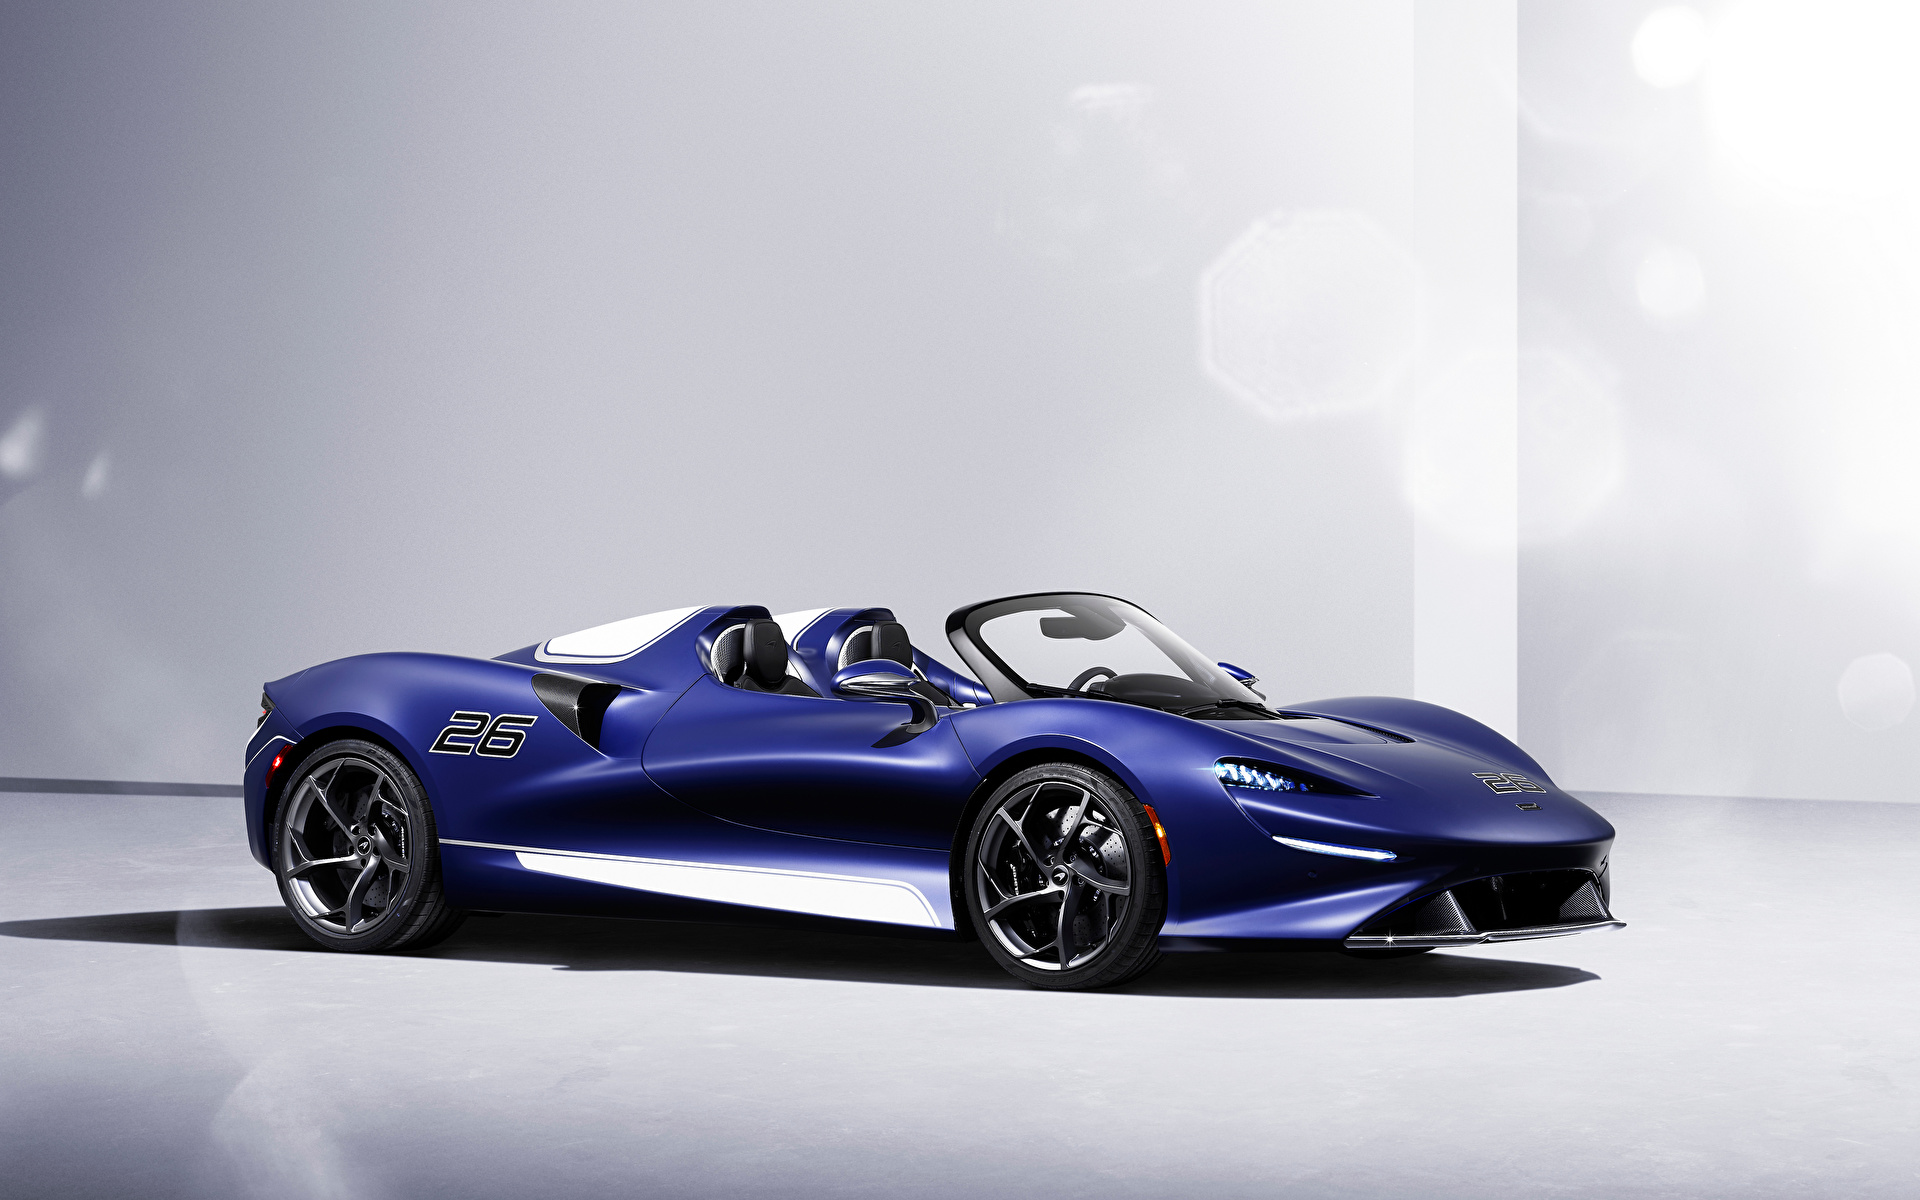 Фото McLaren Elva Windscreen Version, (North America), 2021 Родстер синие машины Металлик 1920x1200 Макларен синяя Синий синих авто машина Автомобили автомобиль